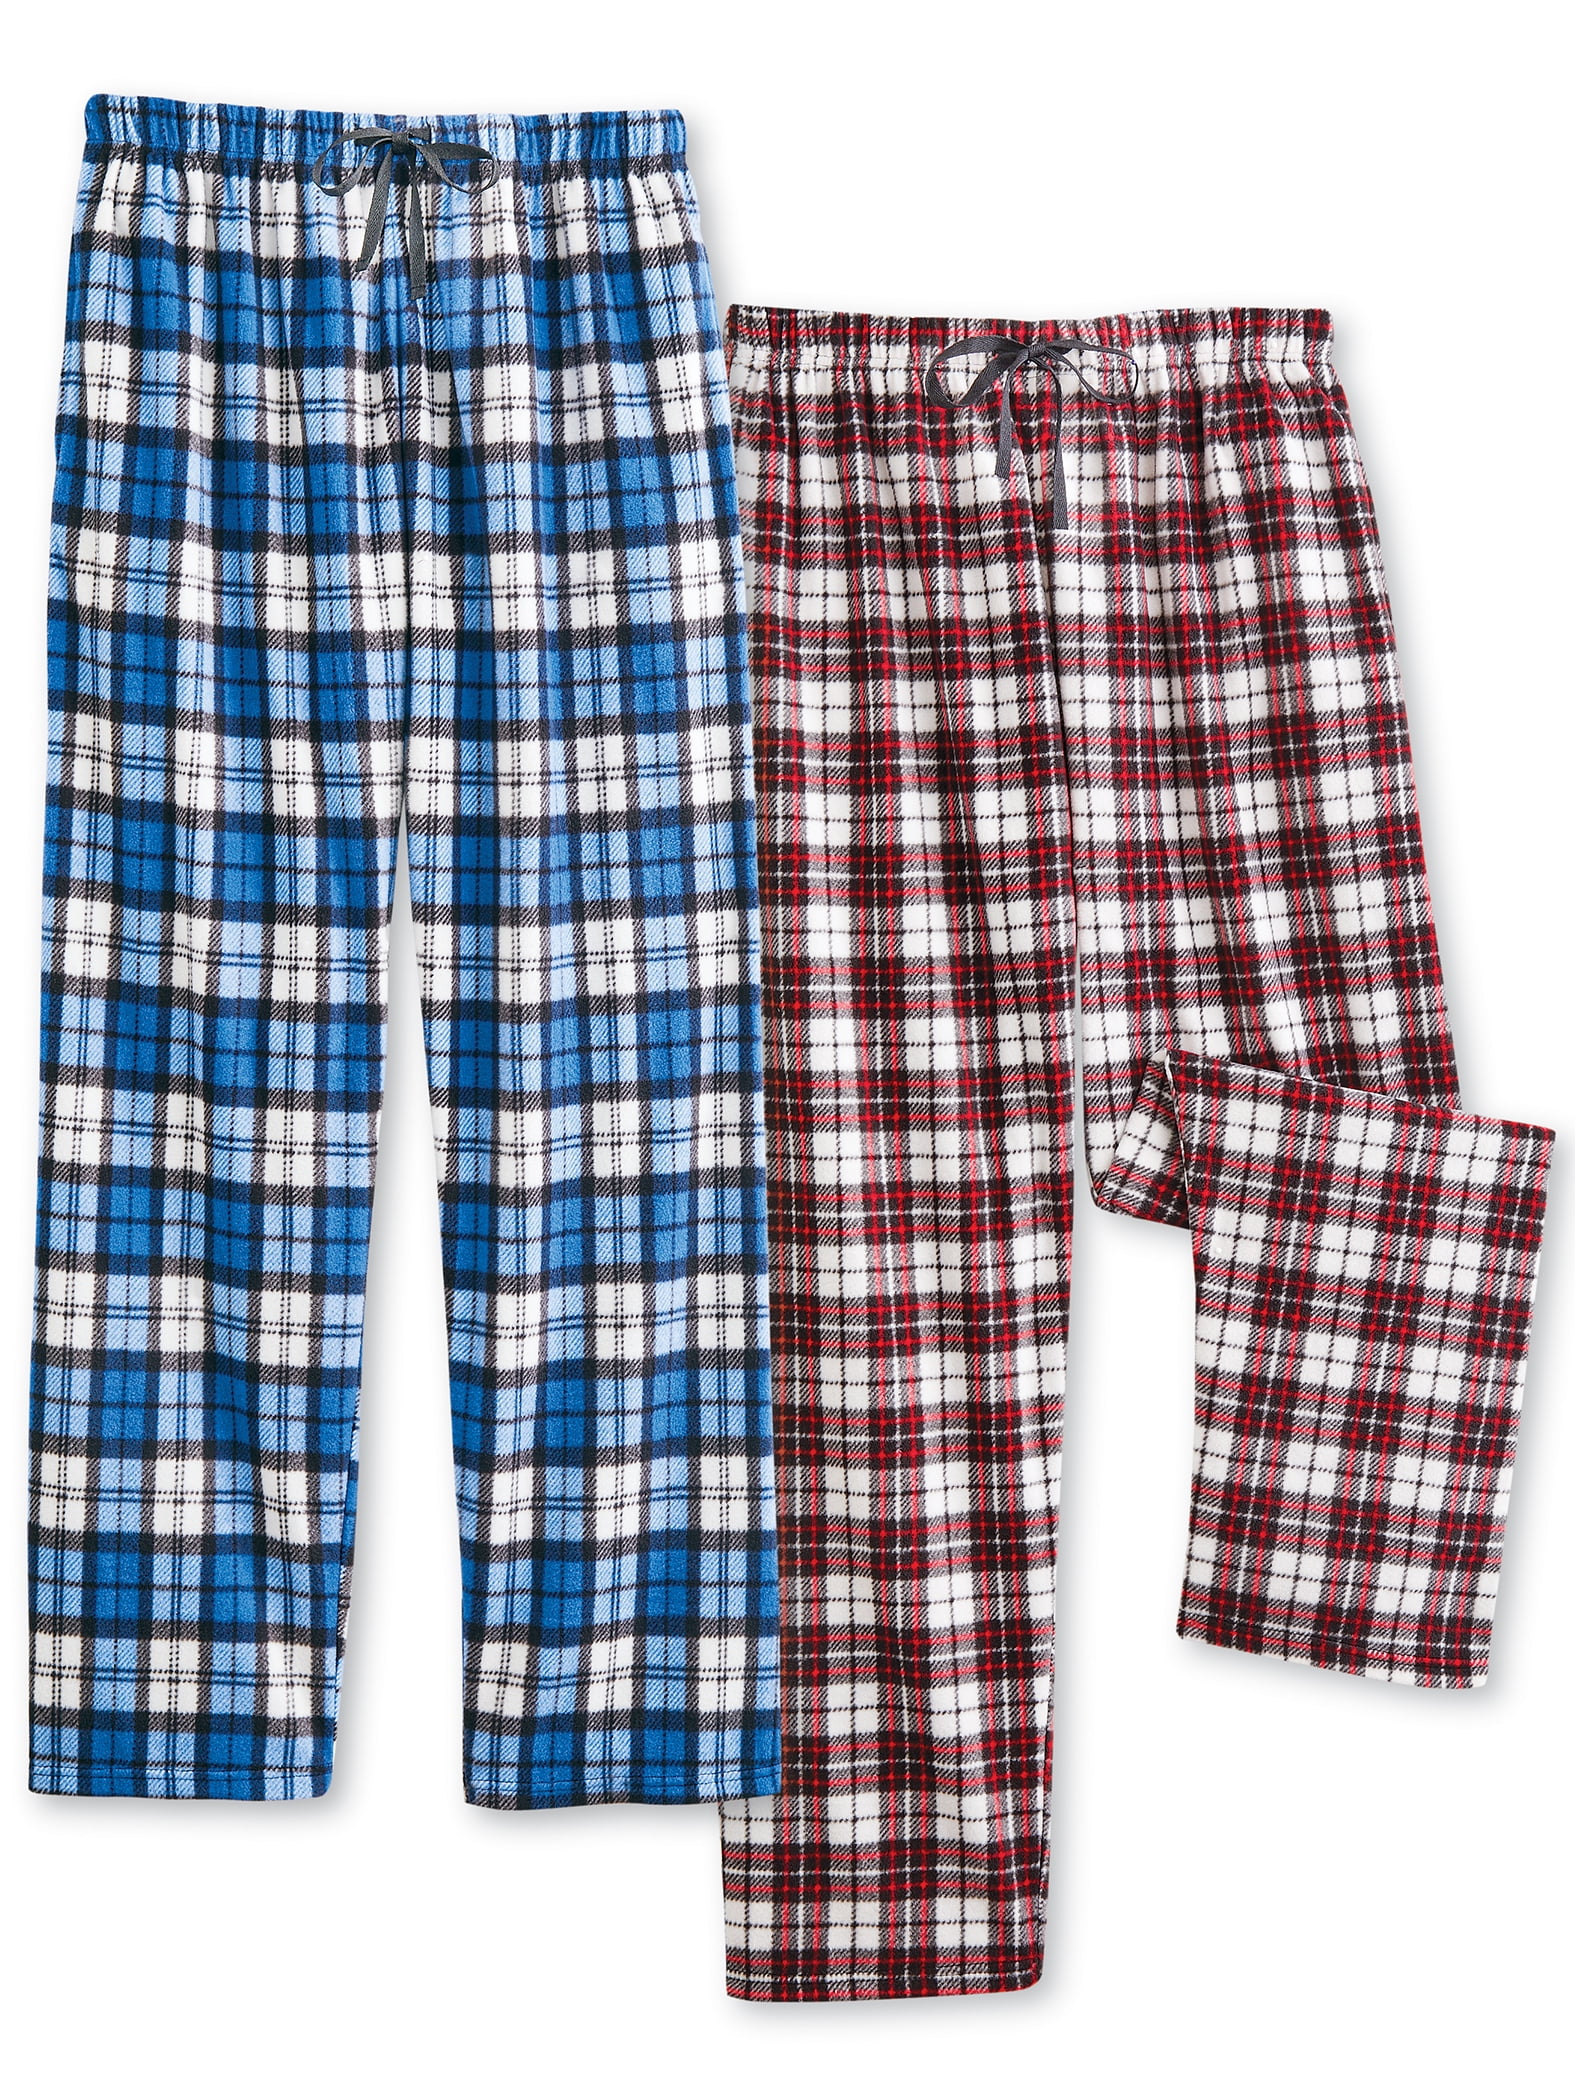 2-Piece Men's Warm Plaid Fleece Pajama Pants Set - Walmart.com